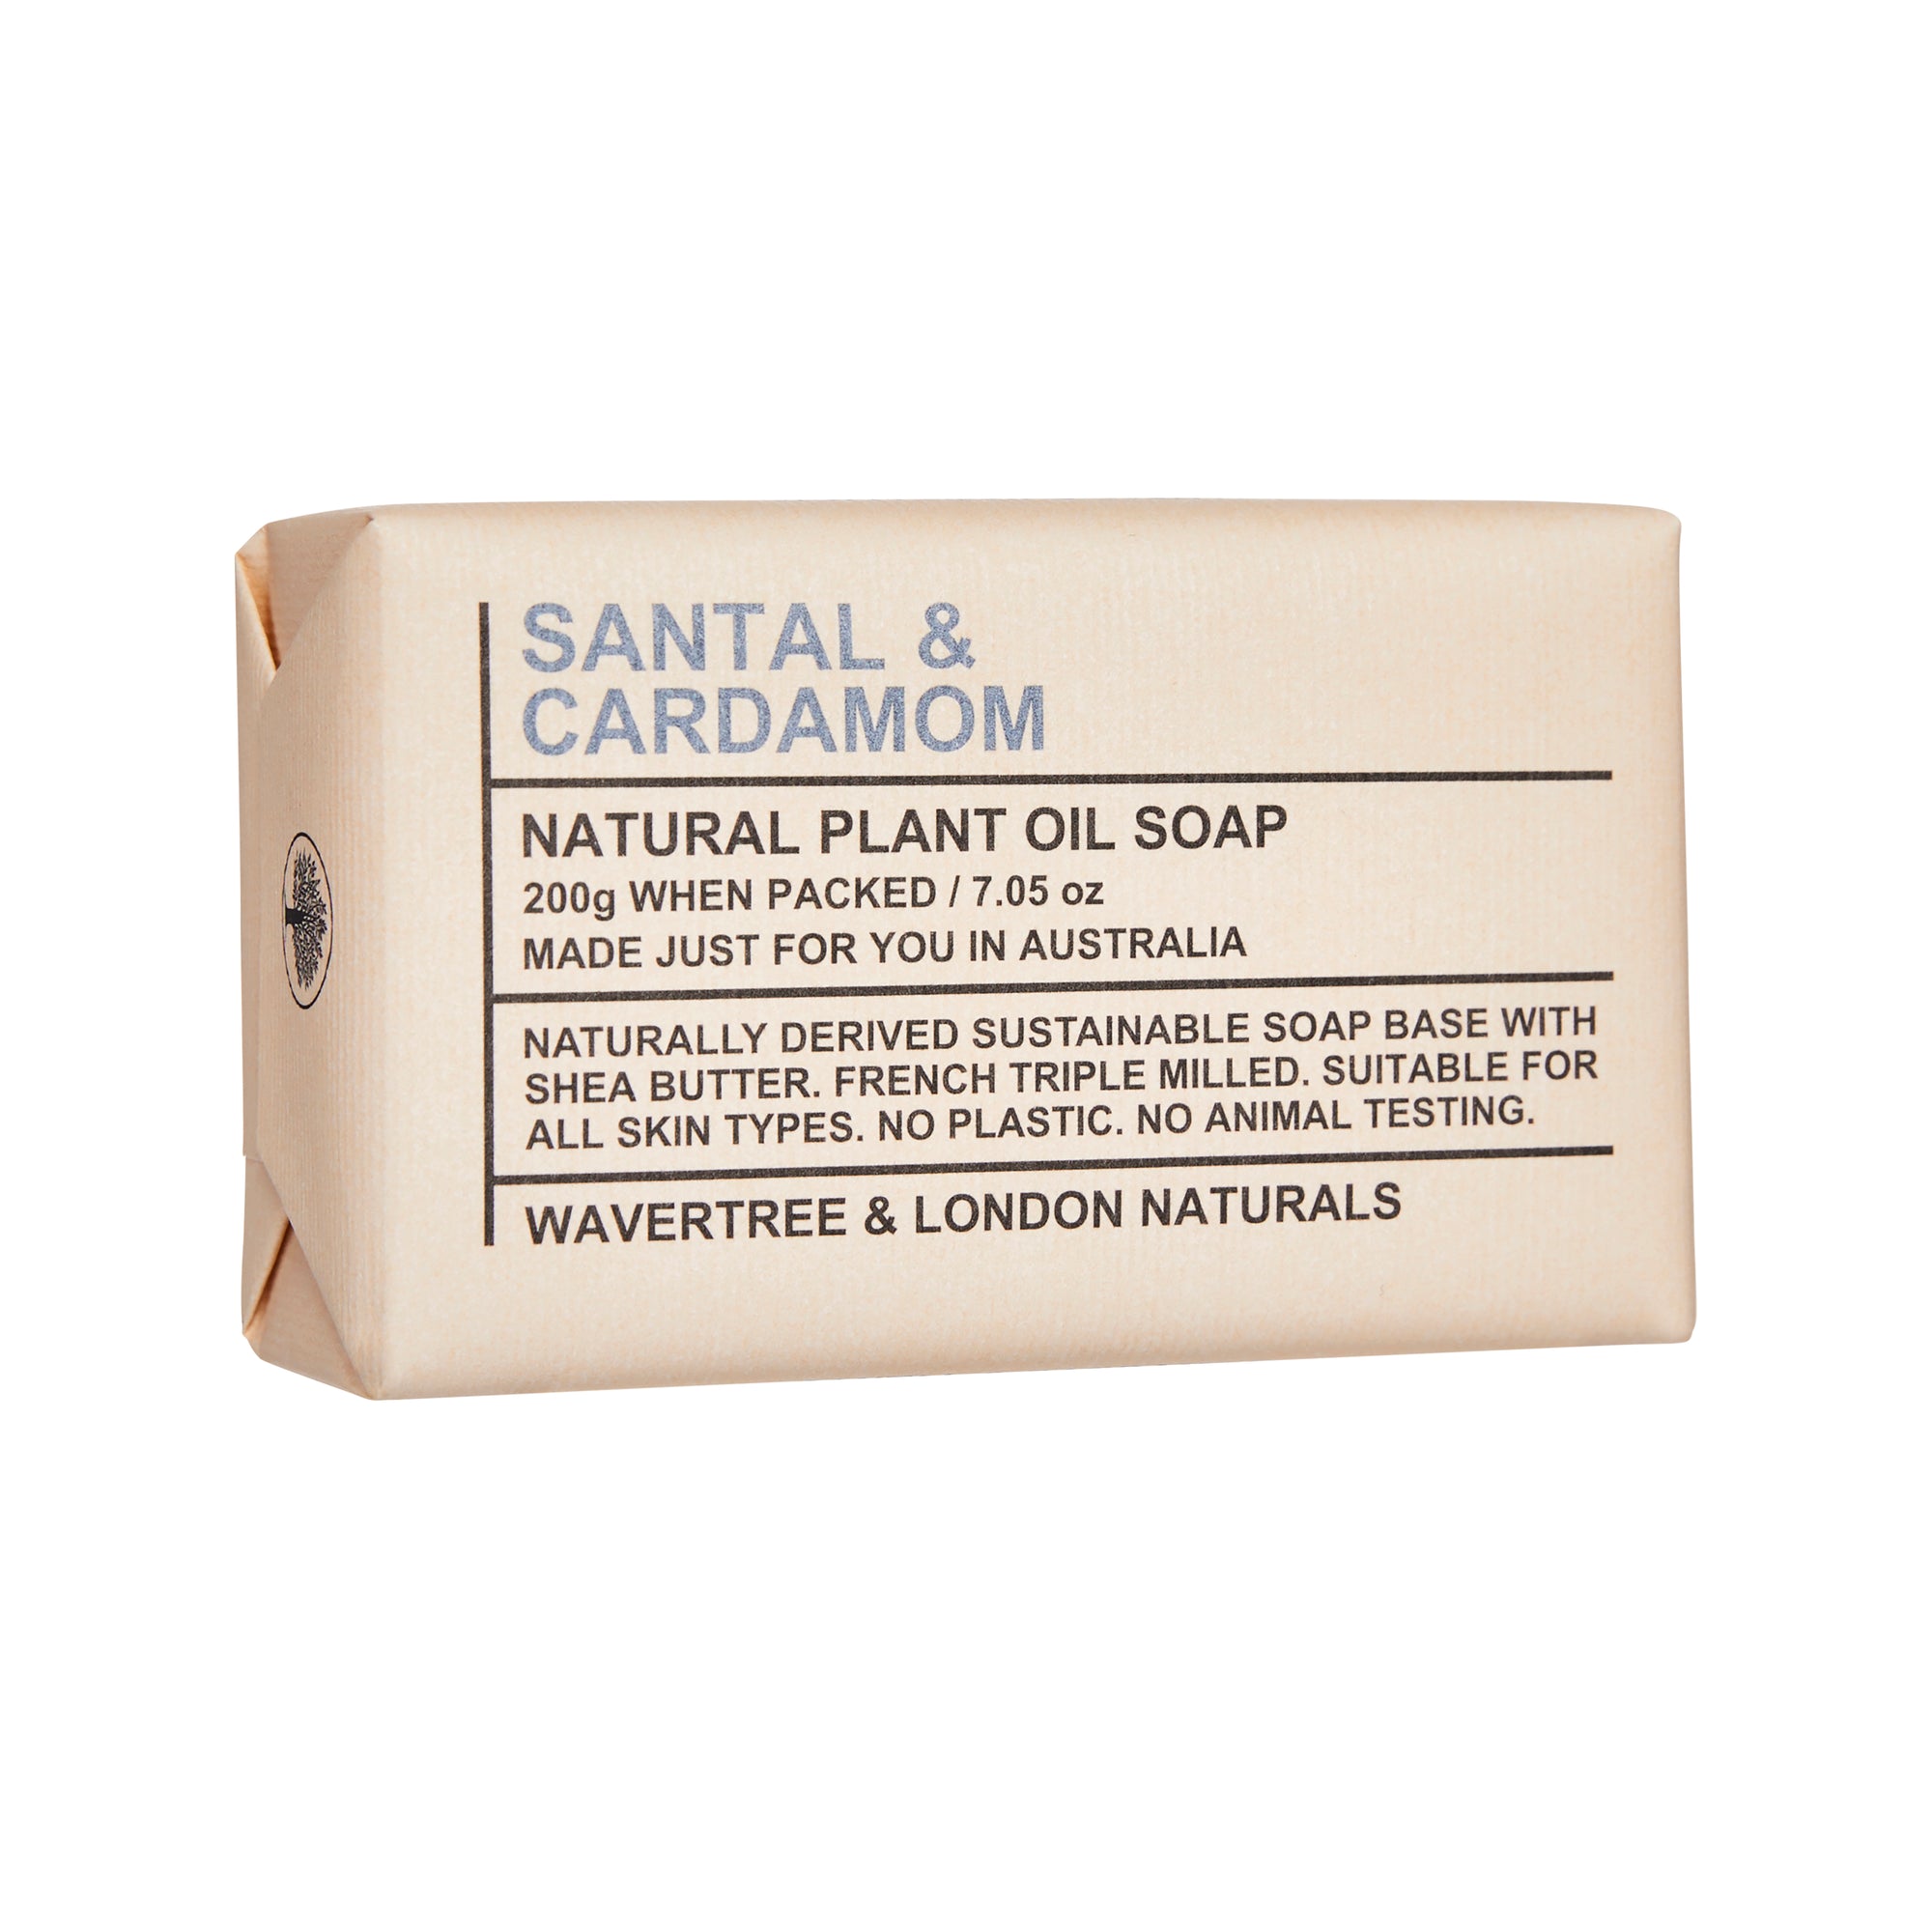 Santal & Cardamom Soap Bar 200g x 8